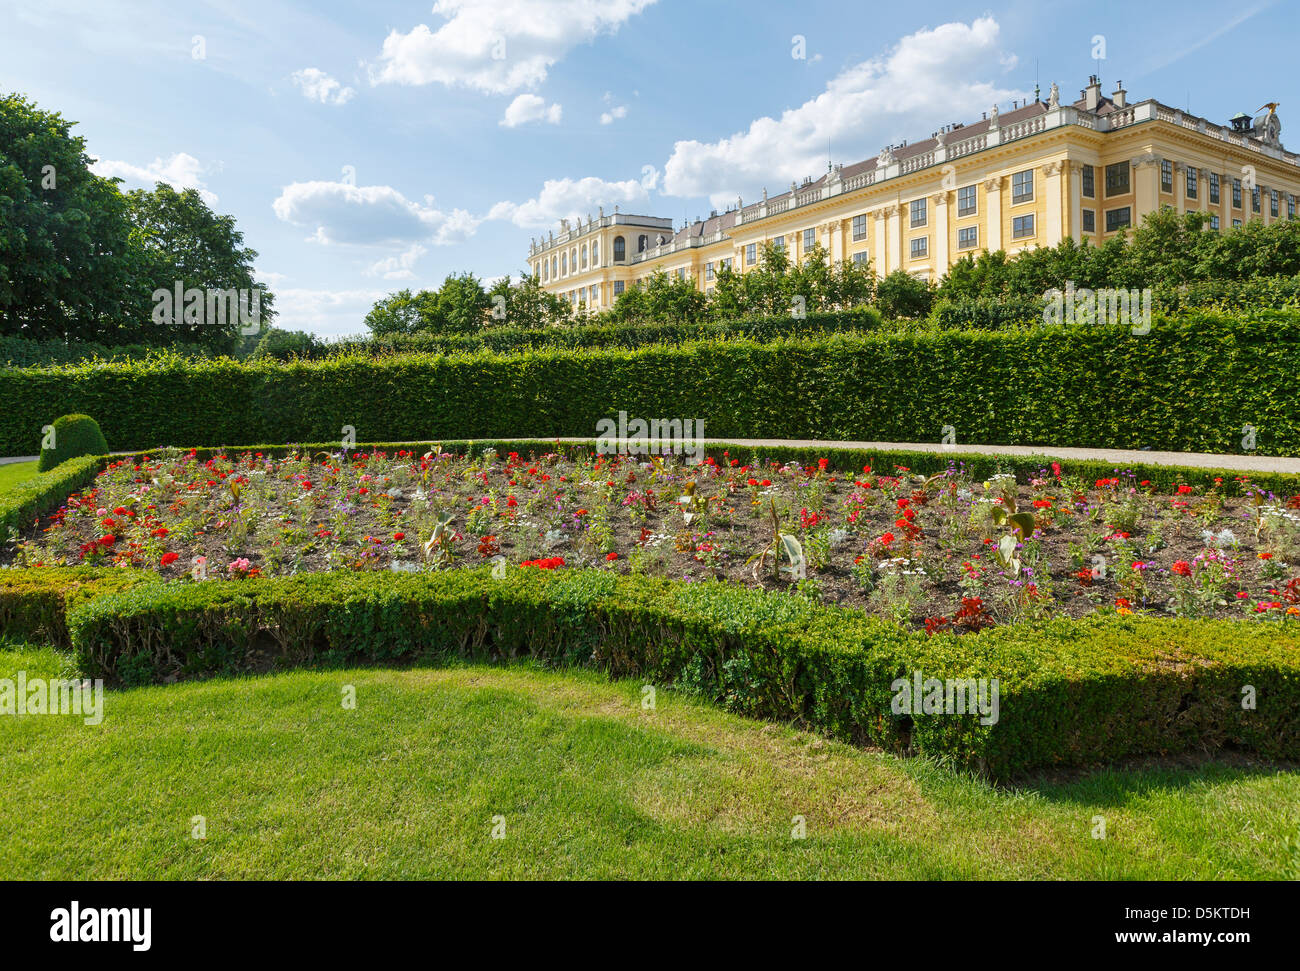 Zone avant du palais Schönbrunn (construire 16-17 siècle) avec l'épanouissement des fleurs sur la pelouse. Vienne, Autriche. Banque D'Images